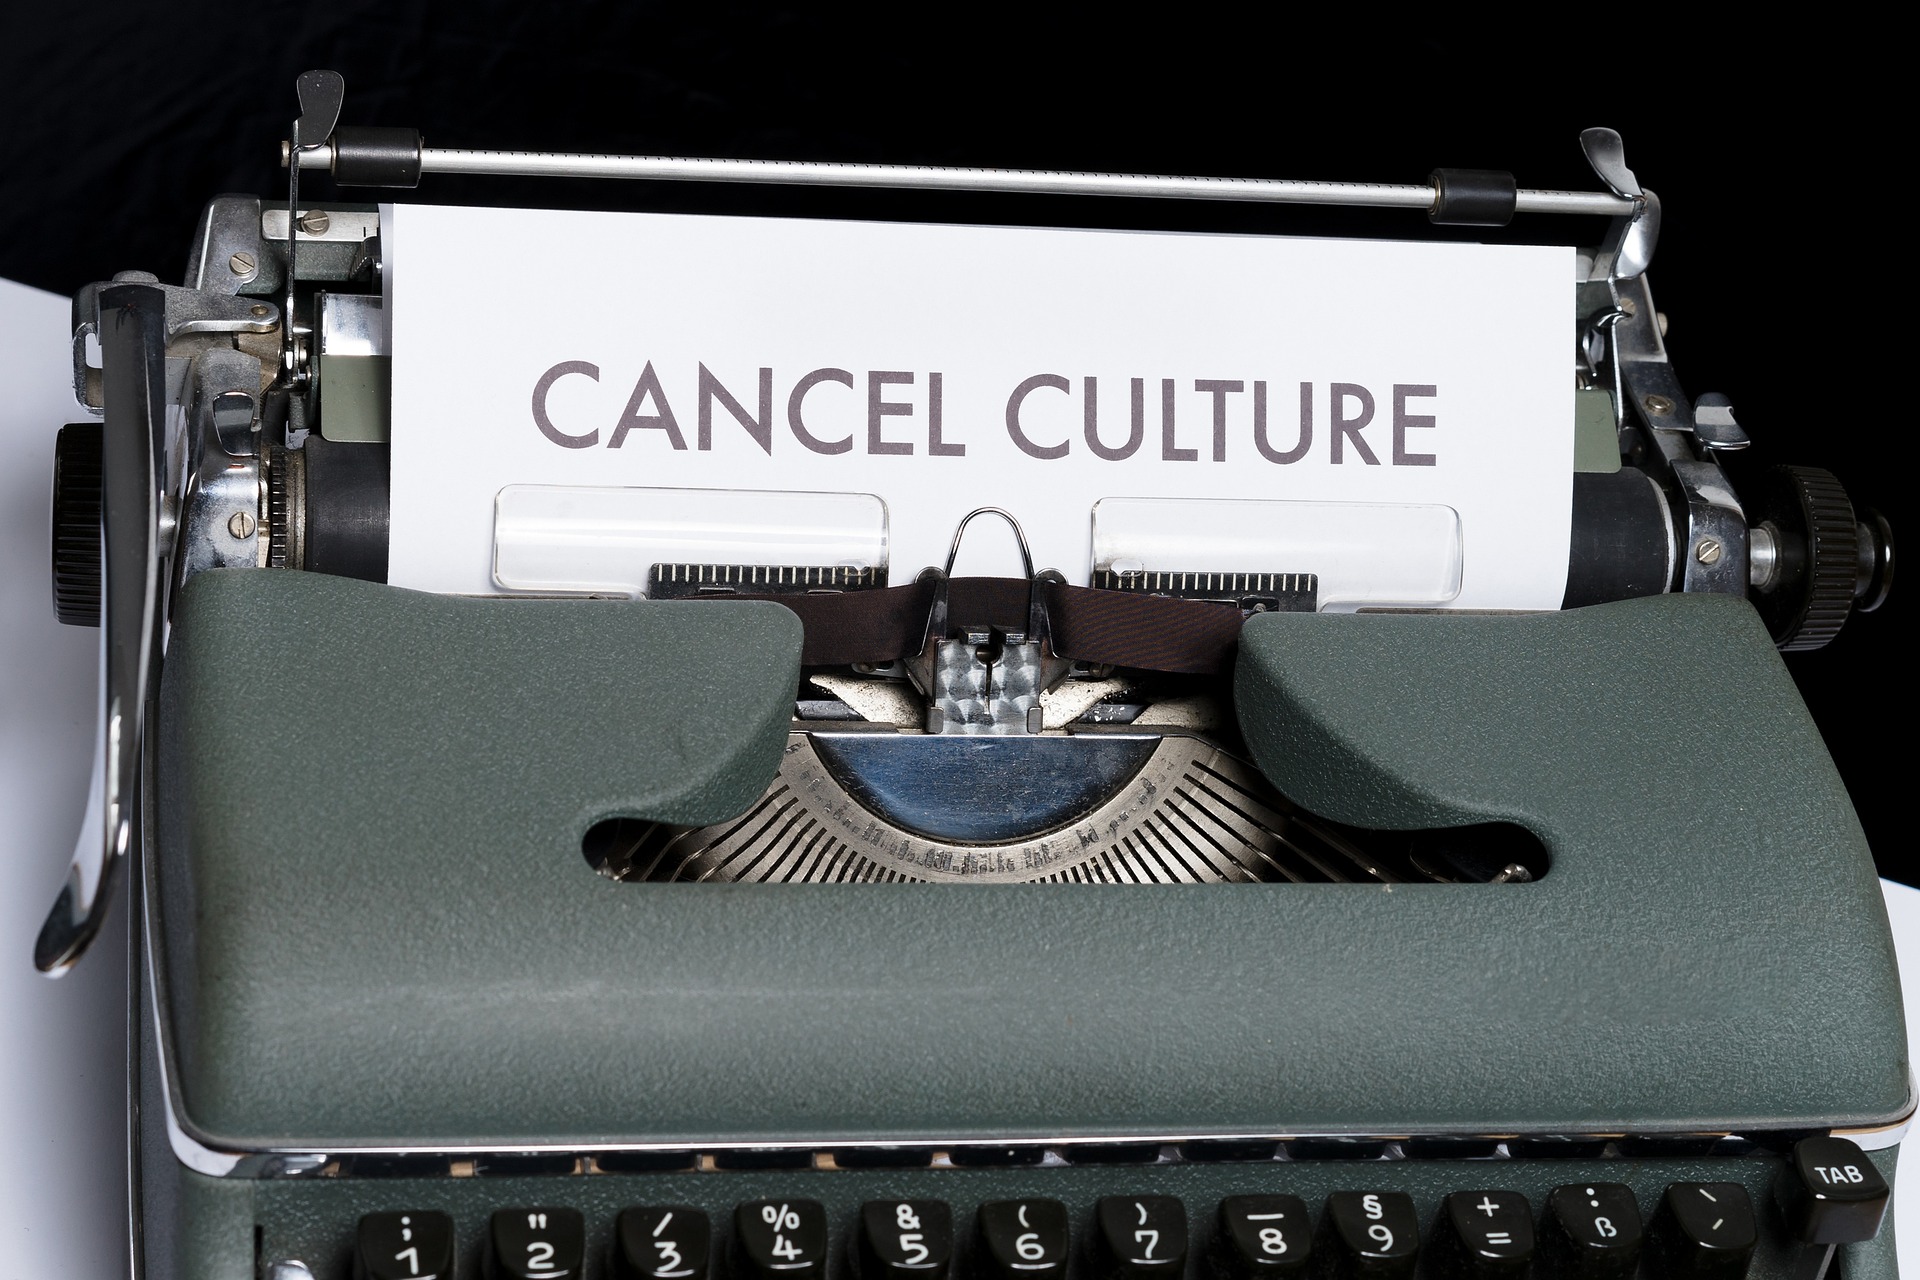 Πριν τον Μ. Καραγάτση: Συγγραφείς στην παγίδα της cancel culture